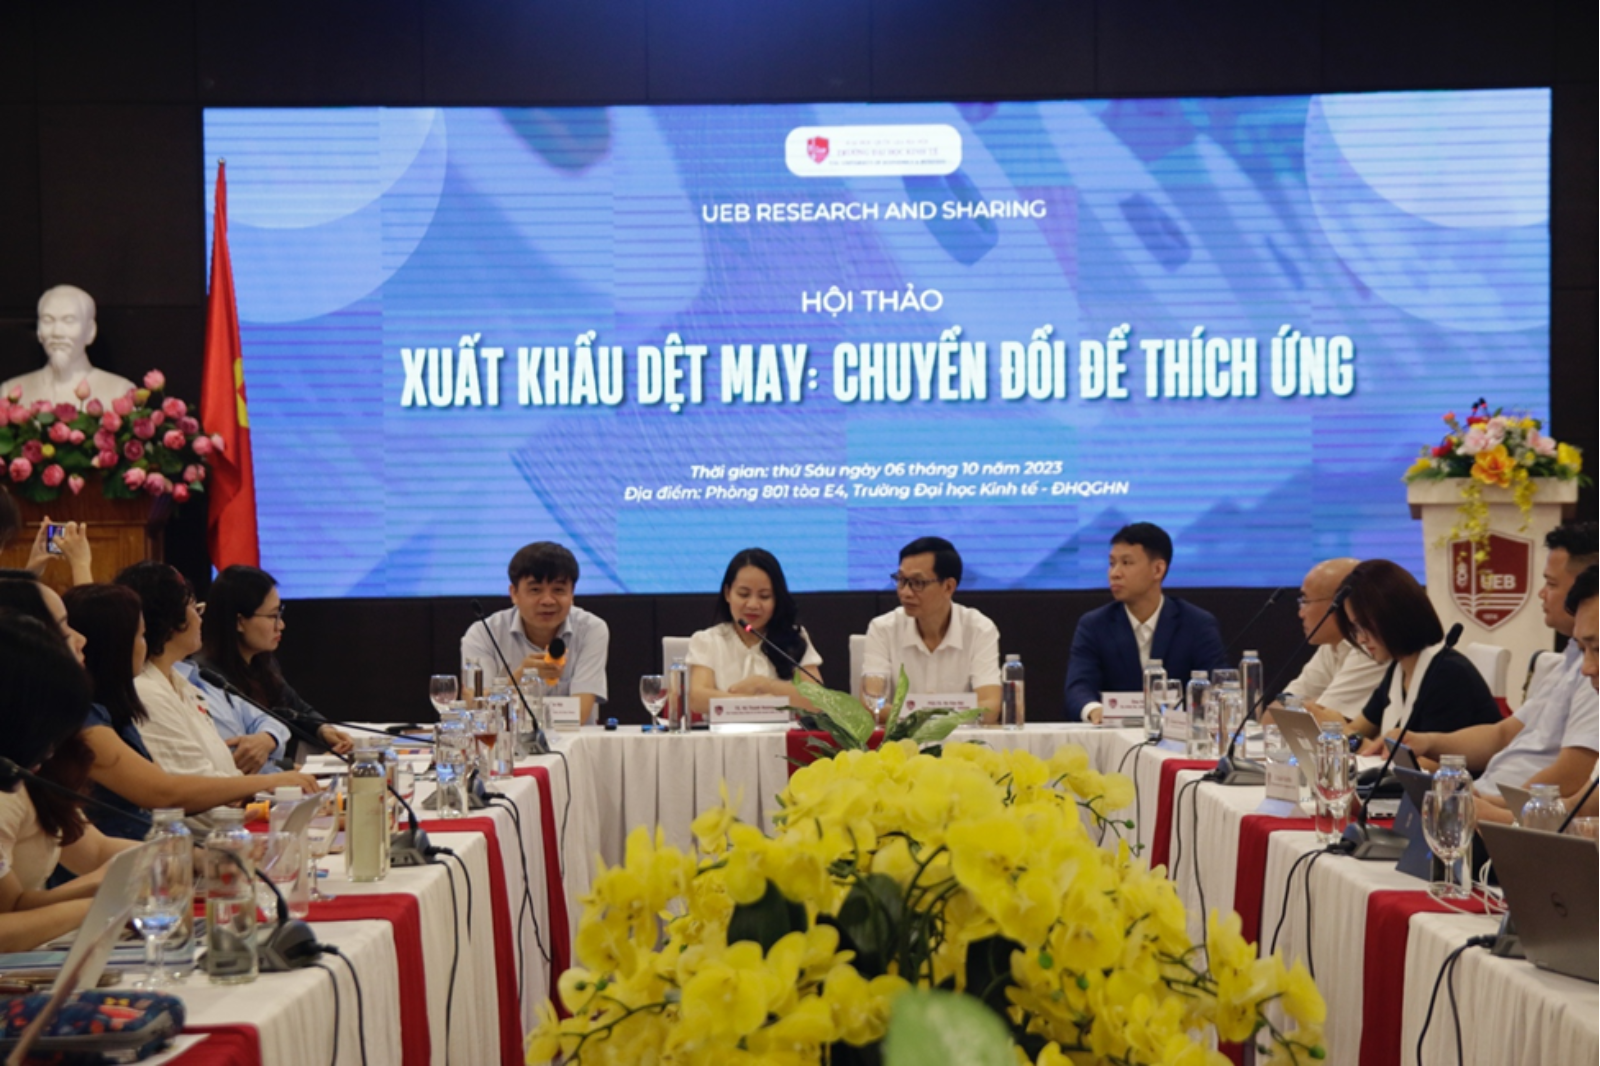 Tư vấn chính sách: "Hội thảo Xuất khẩu dệt may: Chuyển đổi để thích ứng"